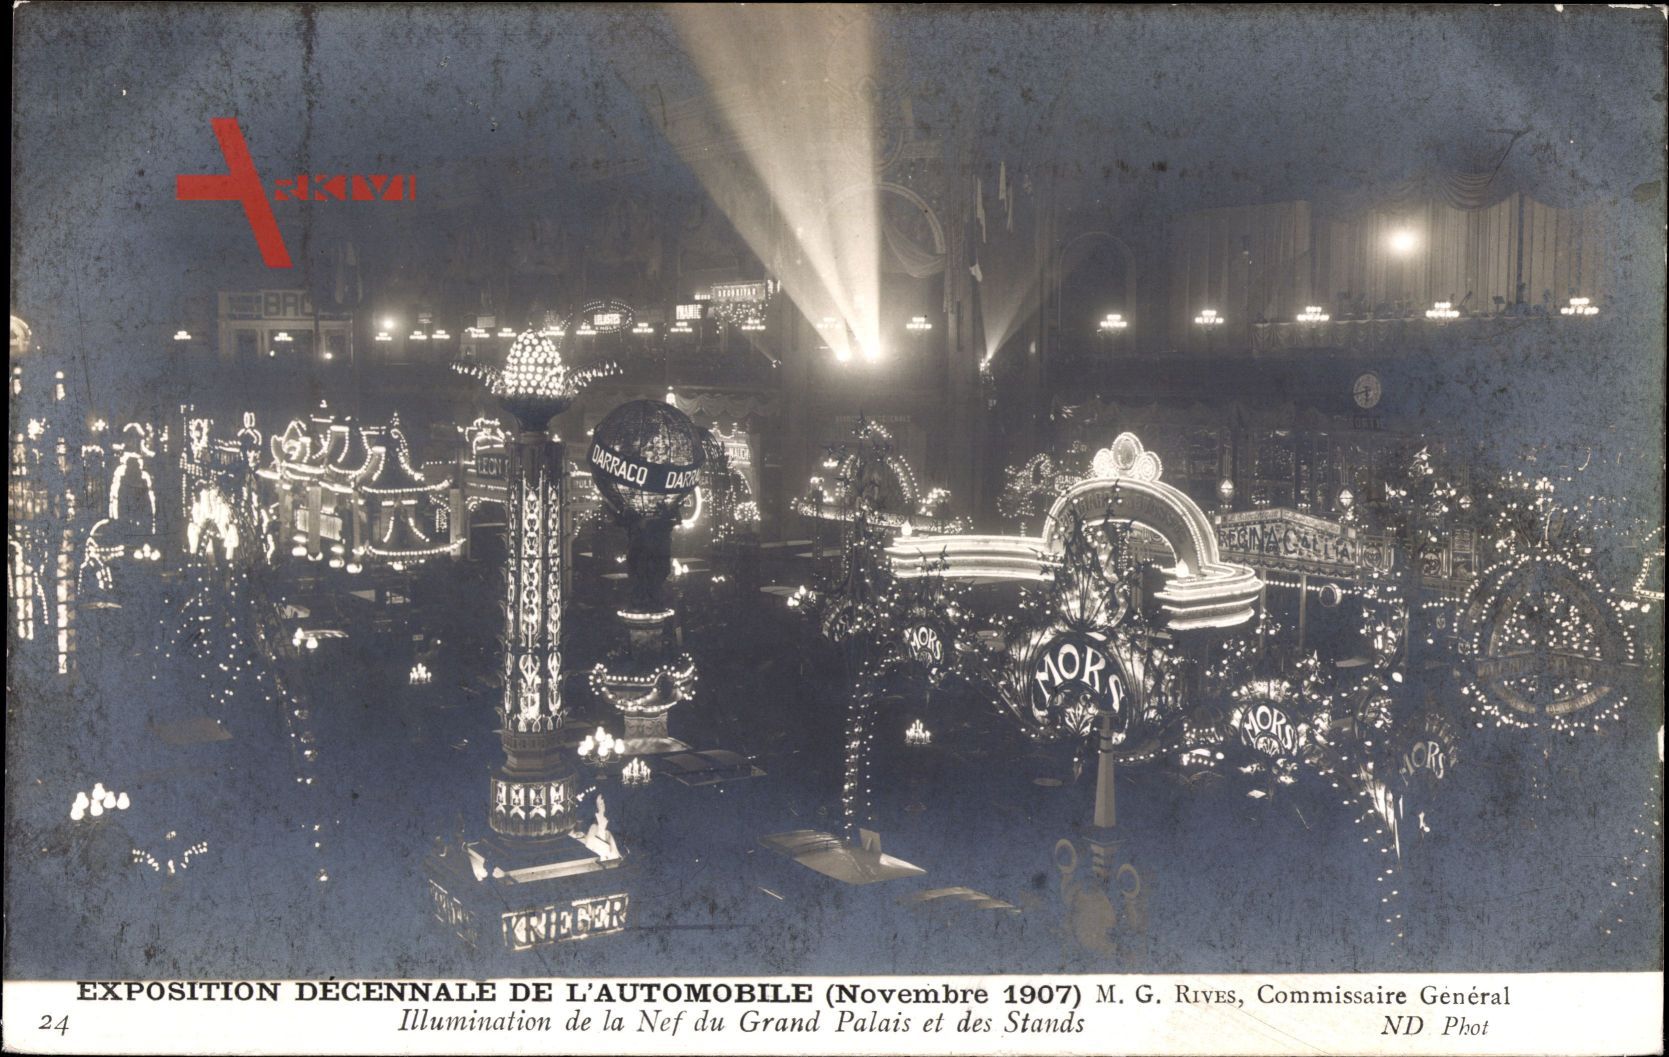 Exposition Décennale de lAutomobile, Novembre 1907